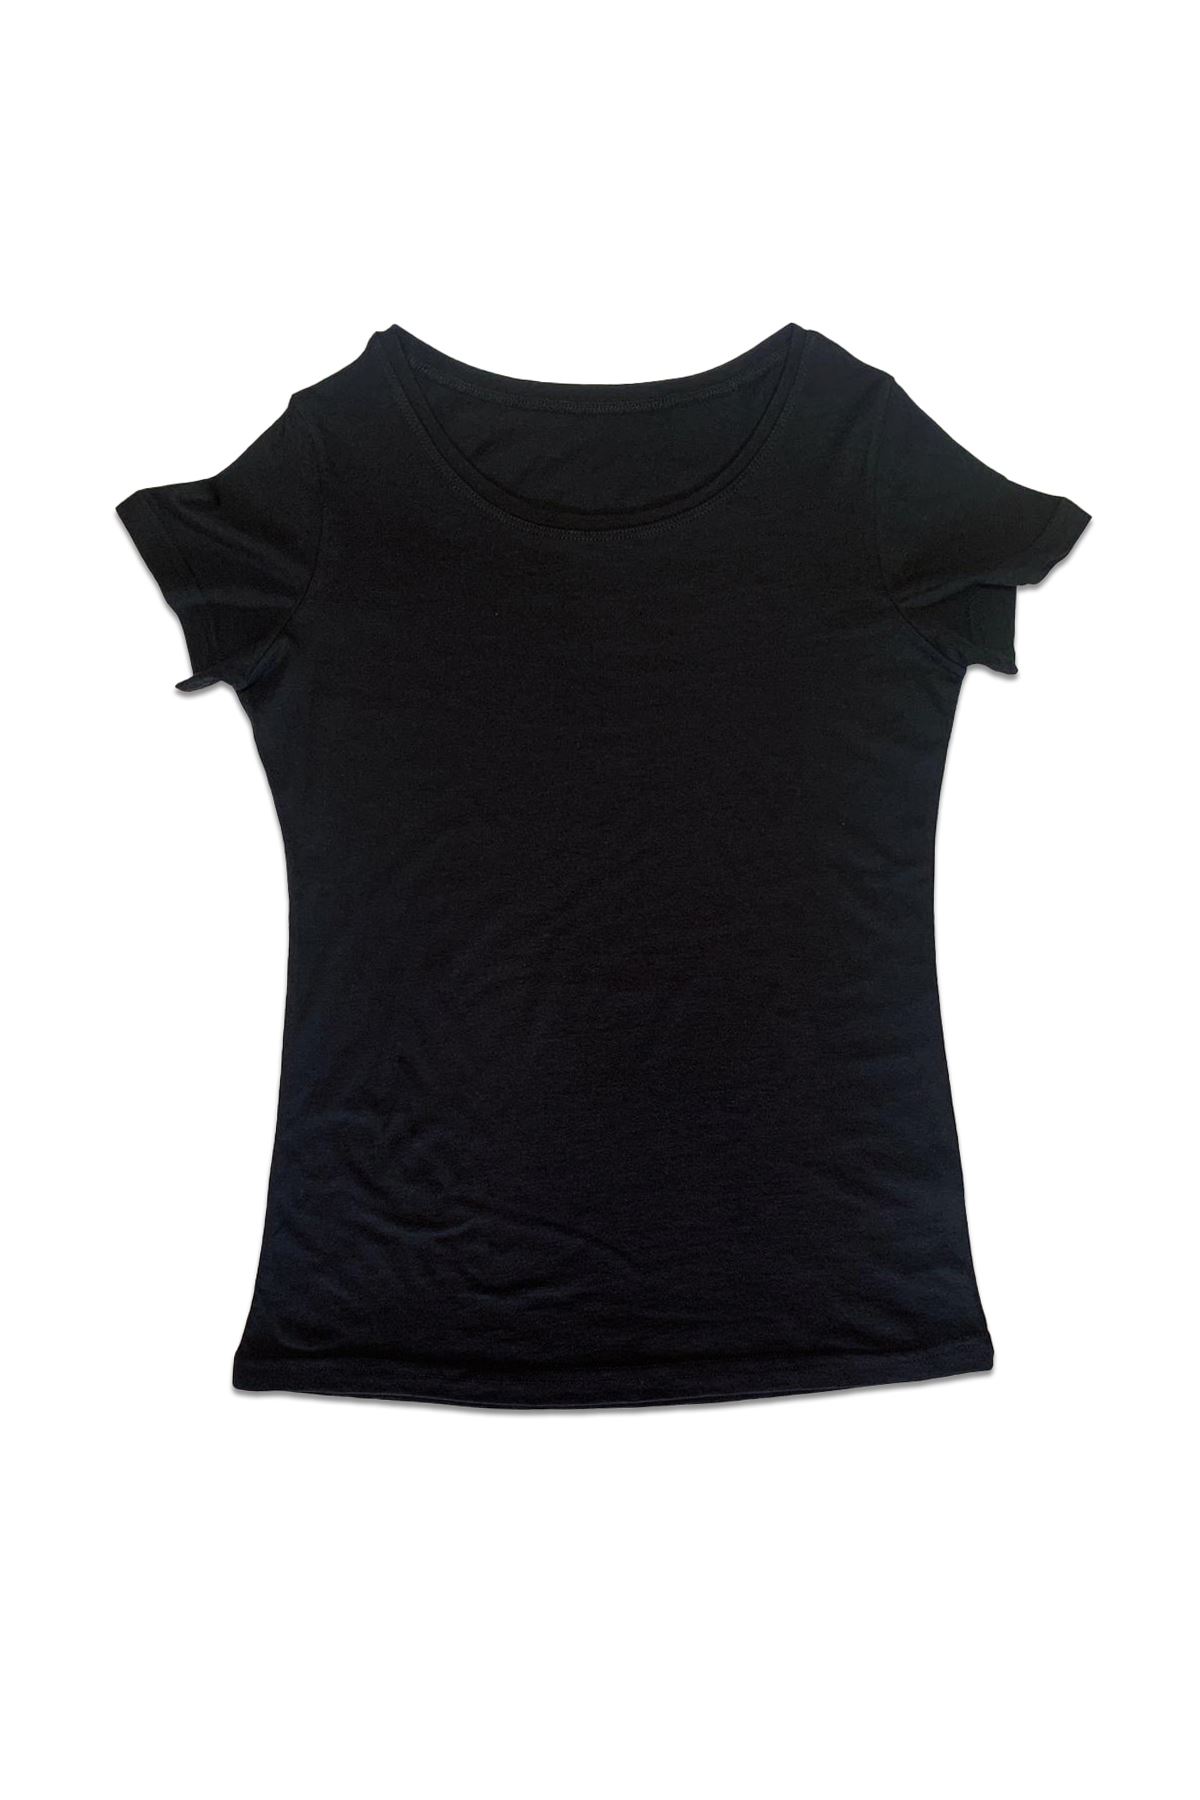 Malabadi Kadın 2 li Paket Siyah-Beyaz Açık Yaka Yaz Serinliği Tişört 2M172 